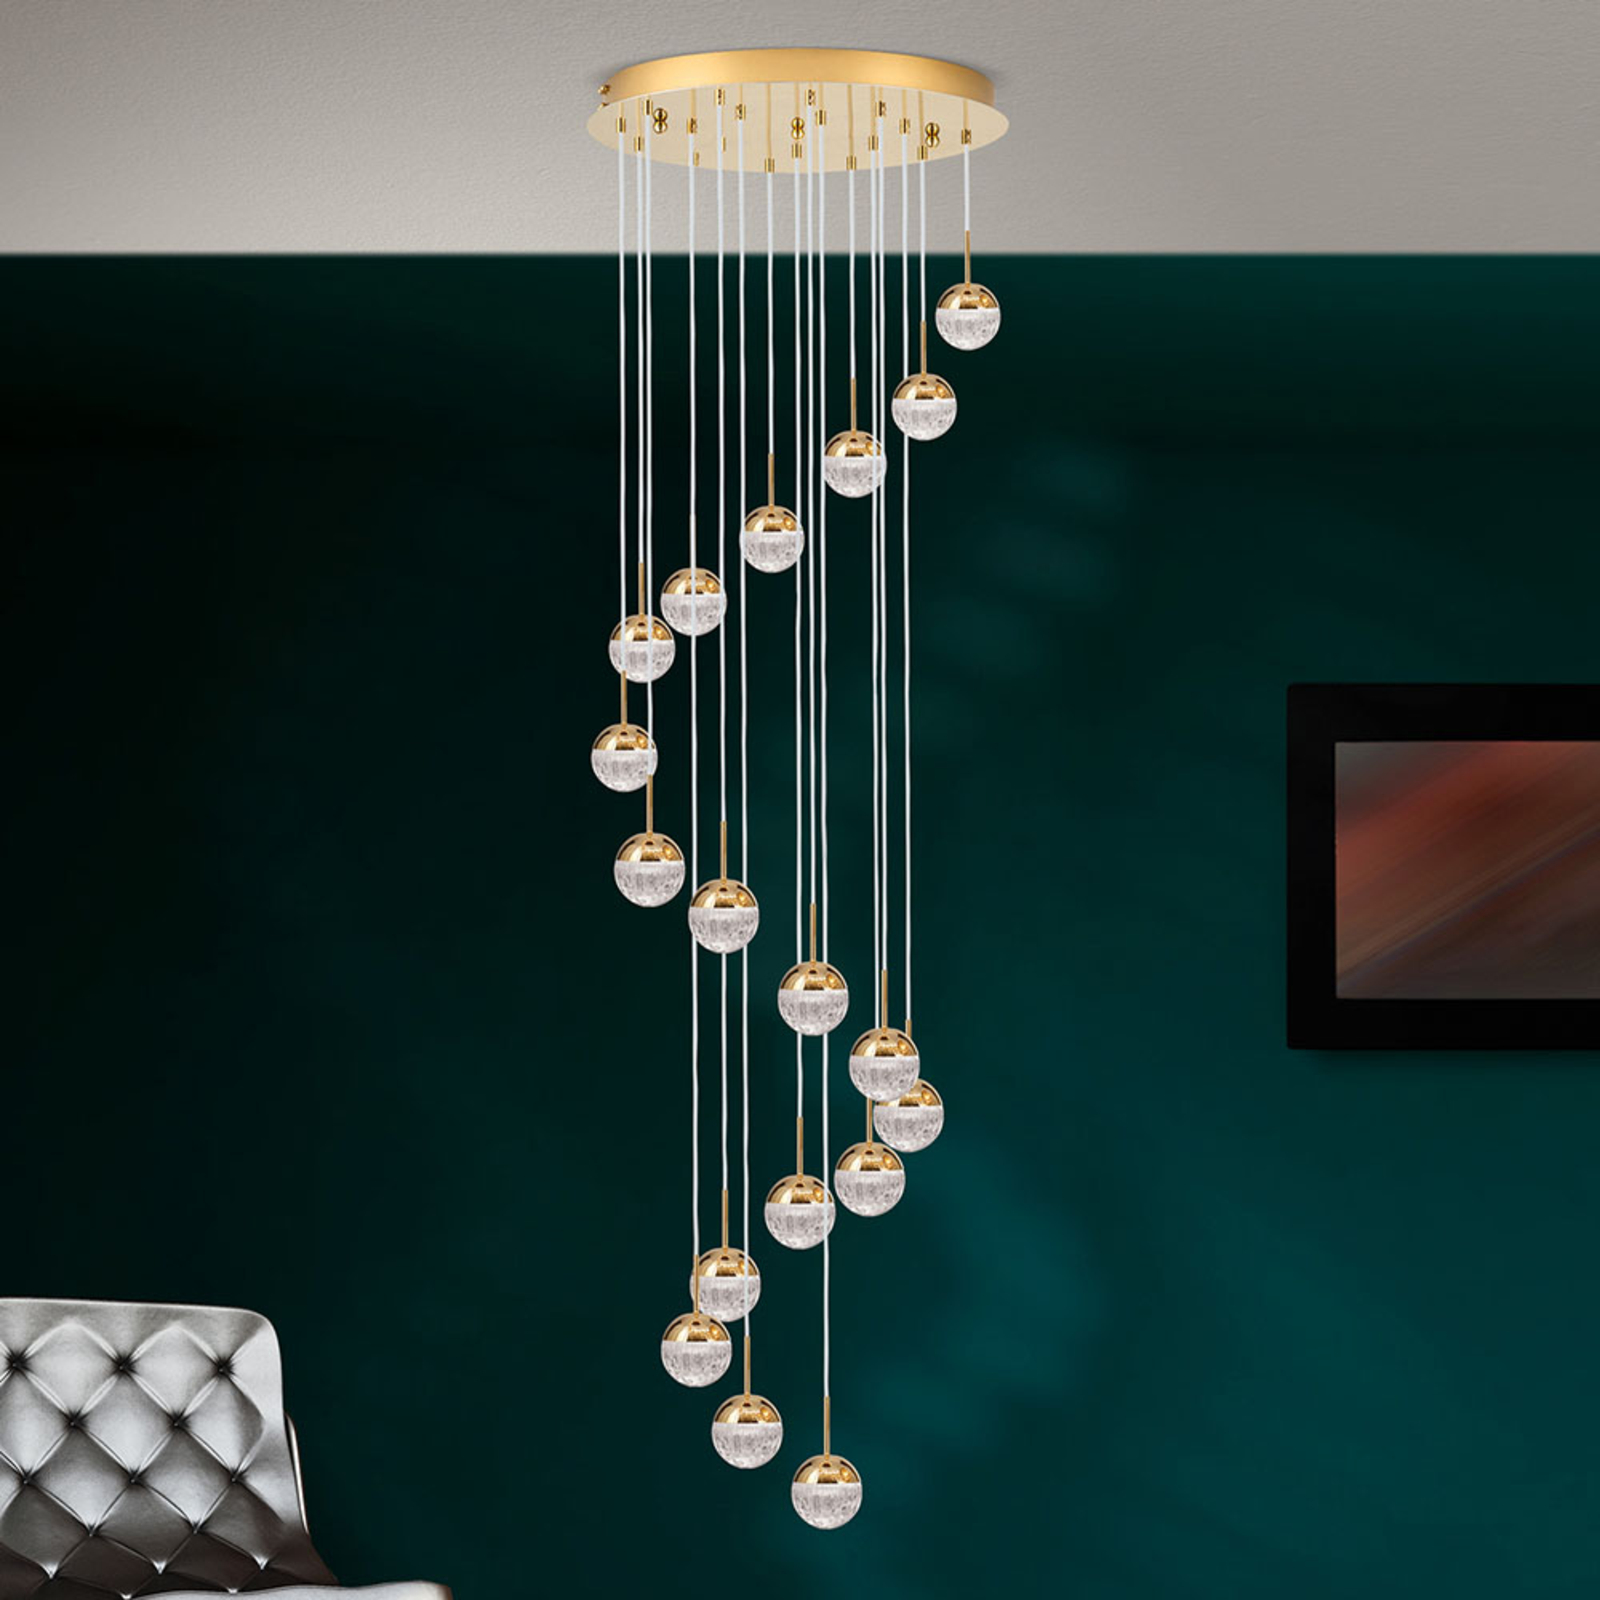 LED-riippuvalaisin Ball 18-lamppuinen, kulta/kerma